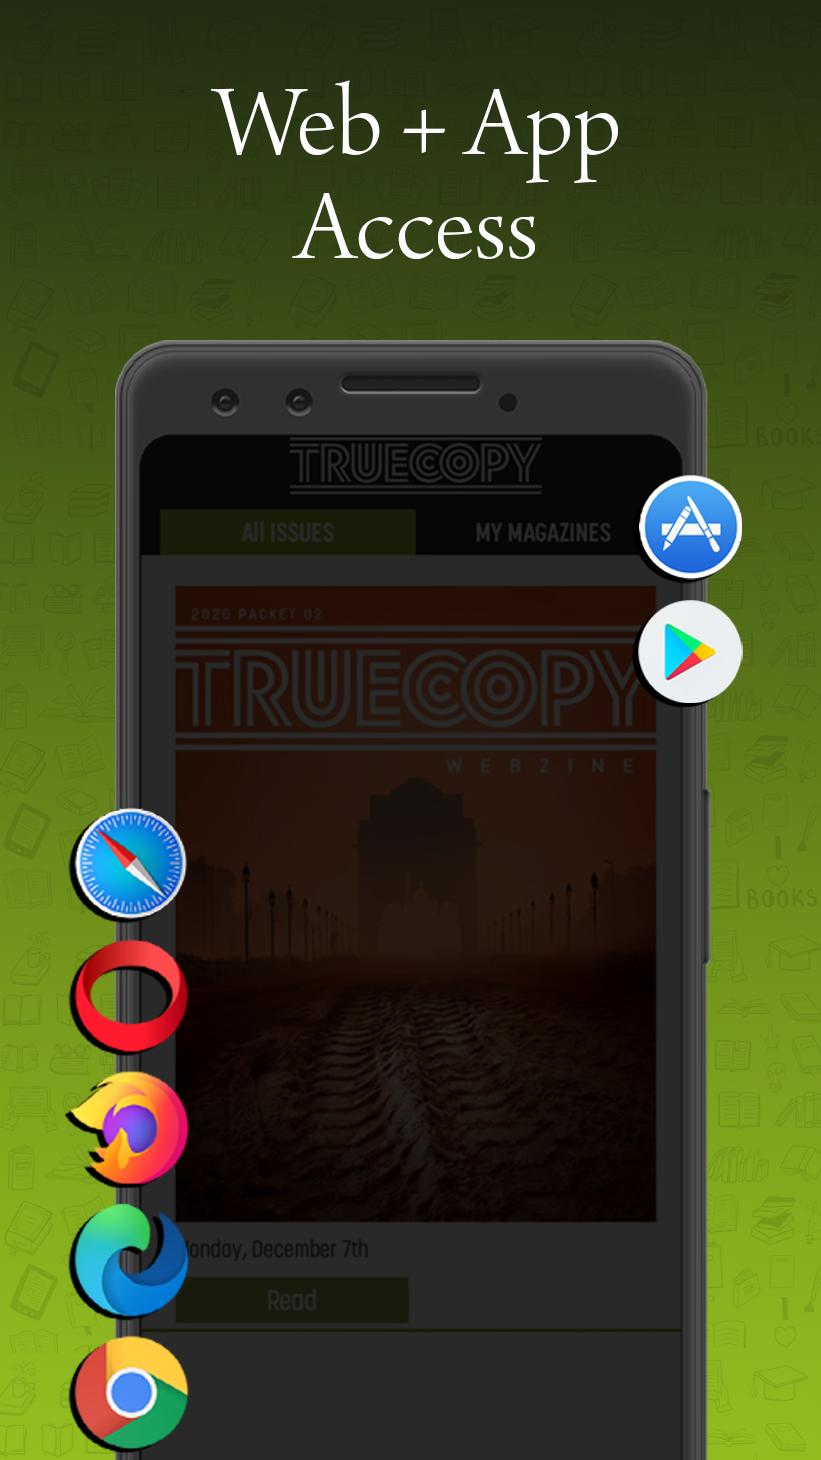 Truecopy Webzine 2.6 Screenshot 6